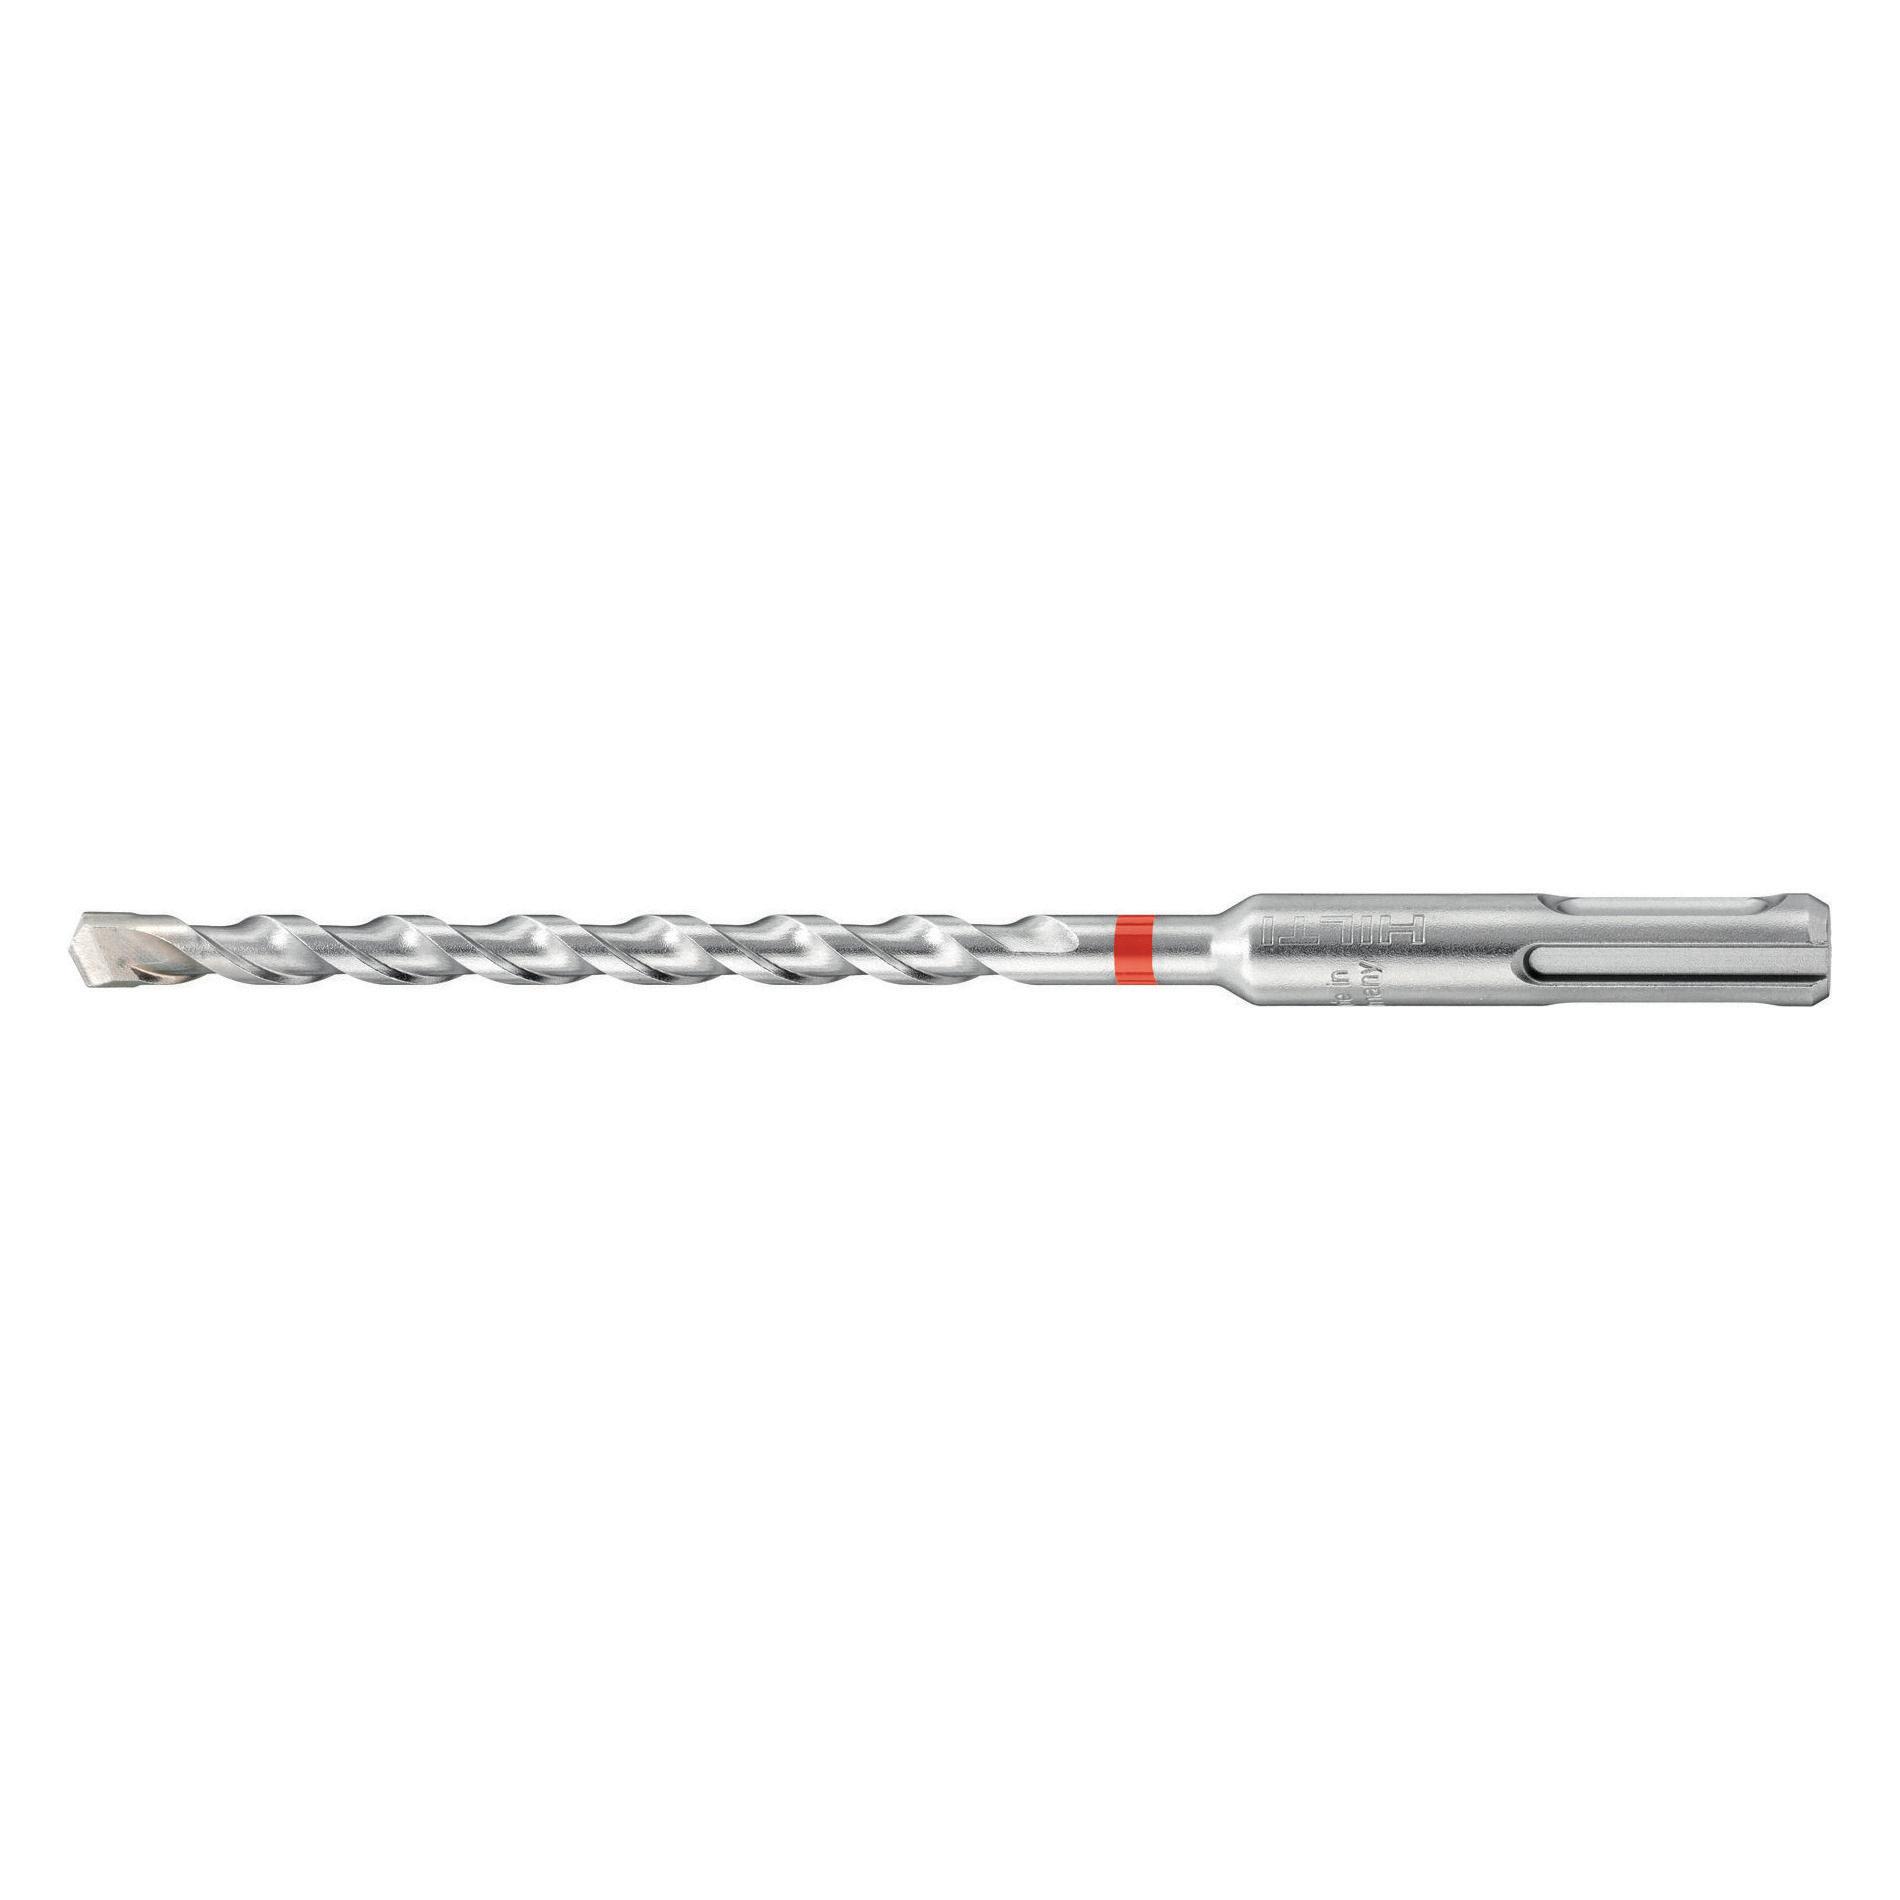 HILTI 435000 TE-CX X-Geometry Hammer Drill Bit, 1/4 in Drill Bit, 10 mm SDS-Plus® Shank, 4 in D Cutting, Solid Carbide Cutting Edge, 6 in OAL